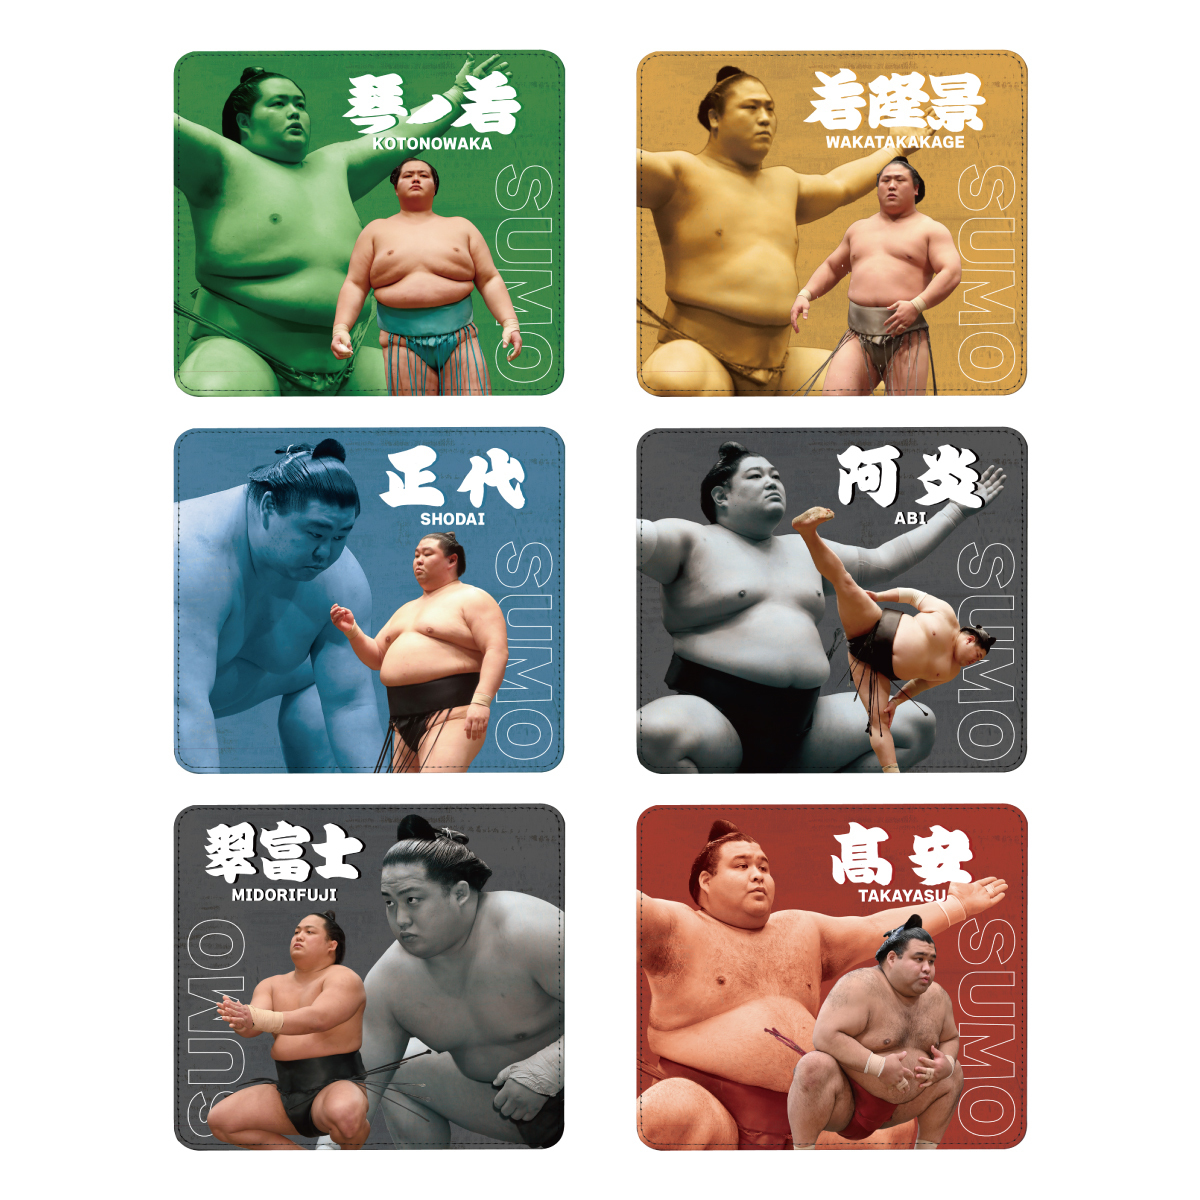 豊昇龍 | 大相撲公式ファンクラブ